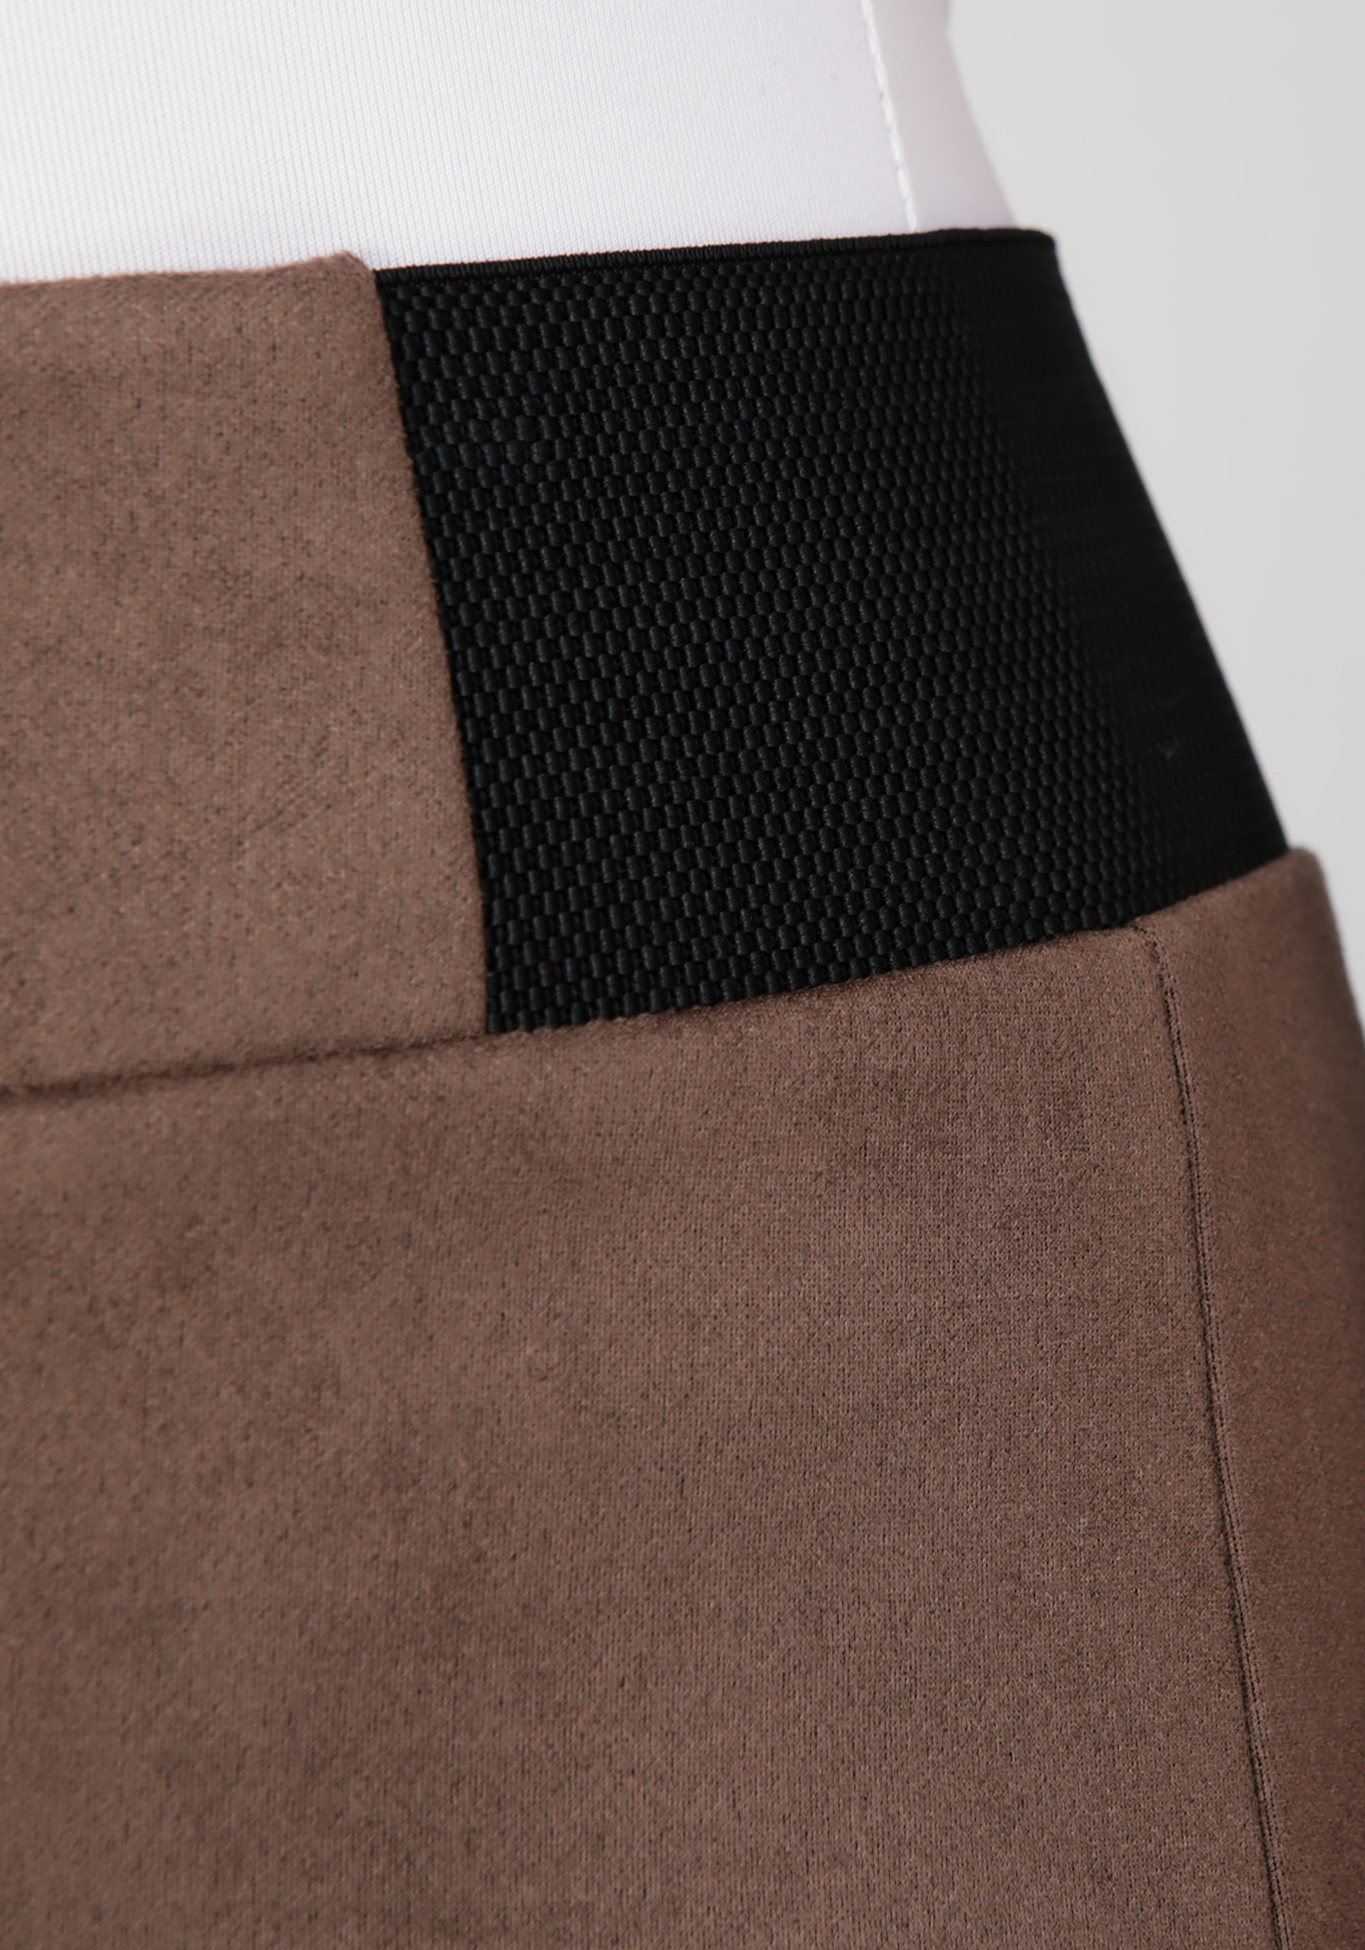 Брюки женские «Элегантный стиль» Bianka Modeno, размер 50, цвет коричневый - фото 4